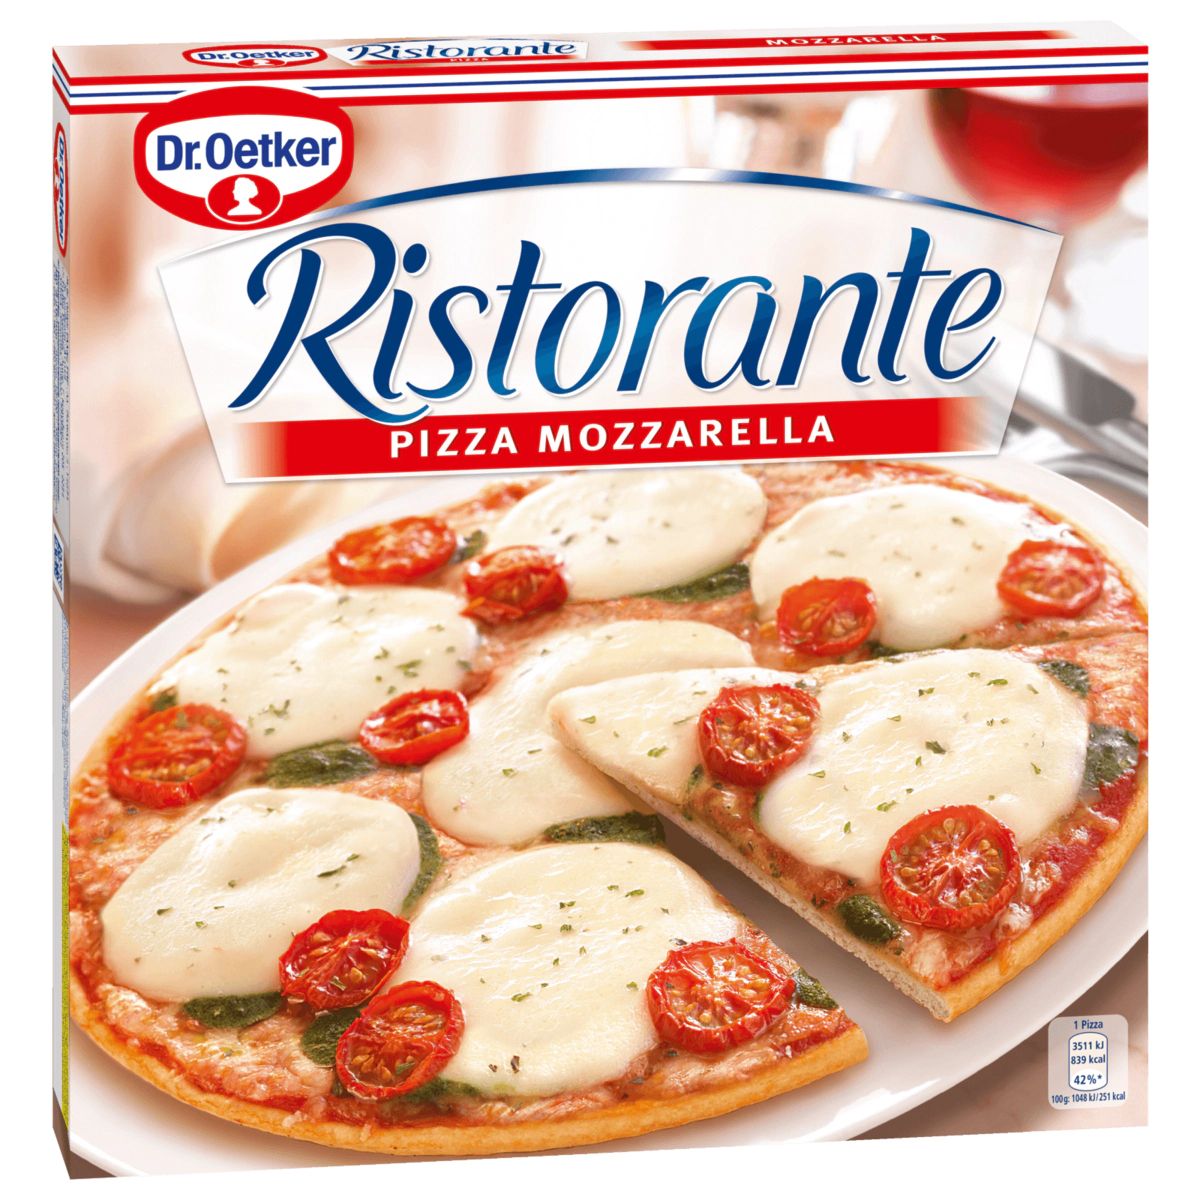  Dr Oetker Ristorante Pizza Mozzarella 355g - Pizza phô mai mozzarella 